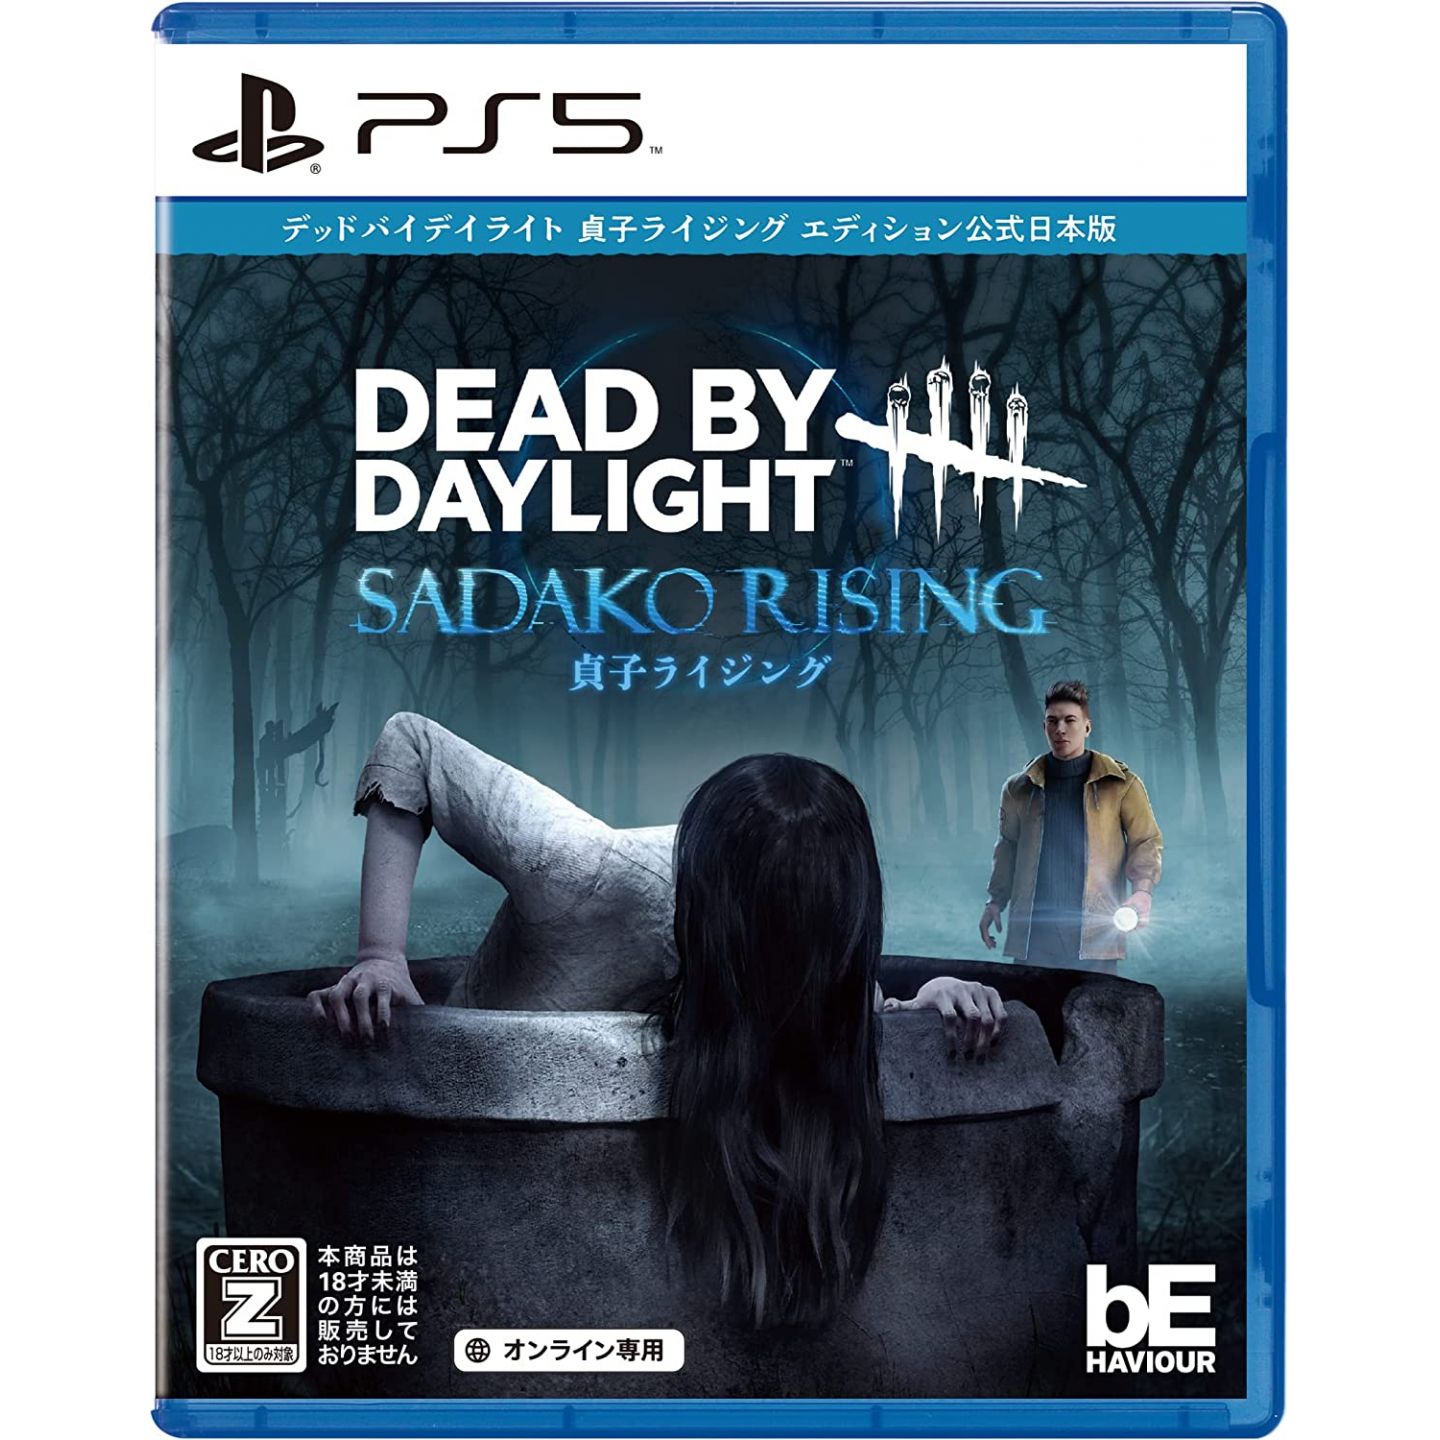 3goo - Dead by Daylight Sadako Rising for Sony Playstation PS5